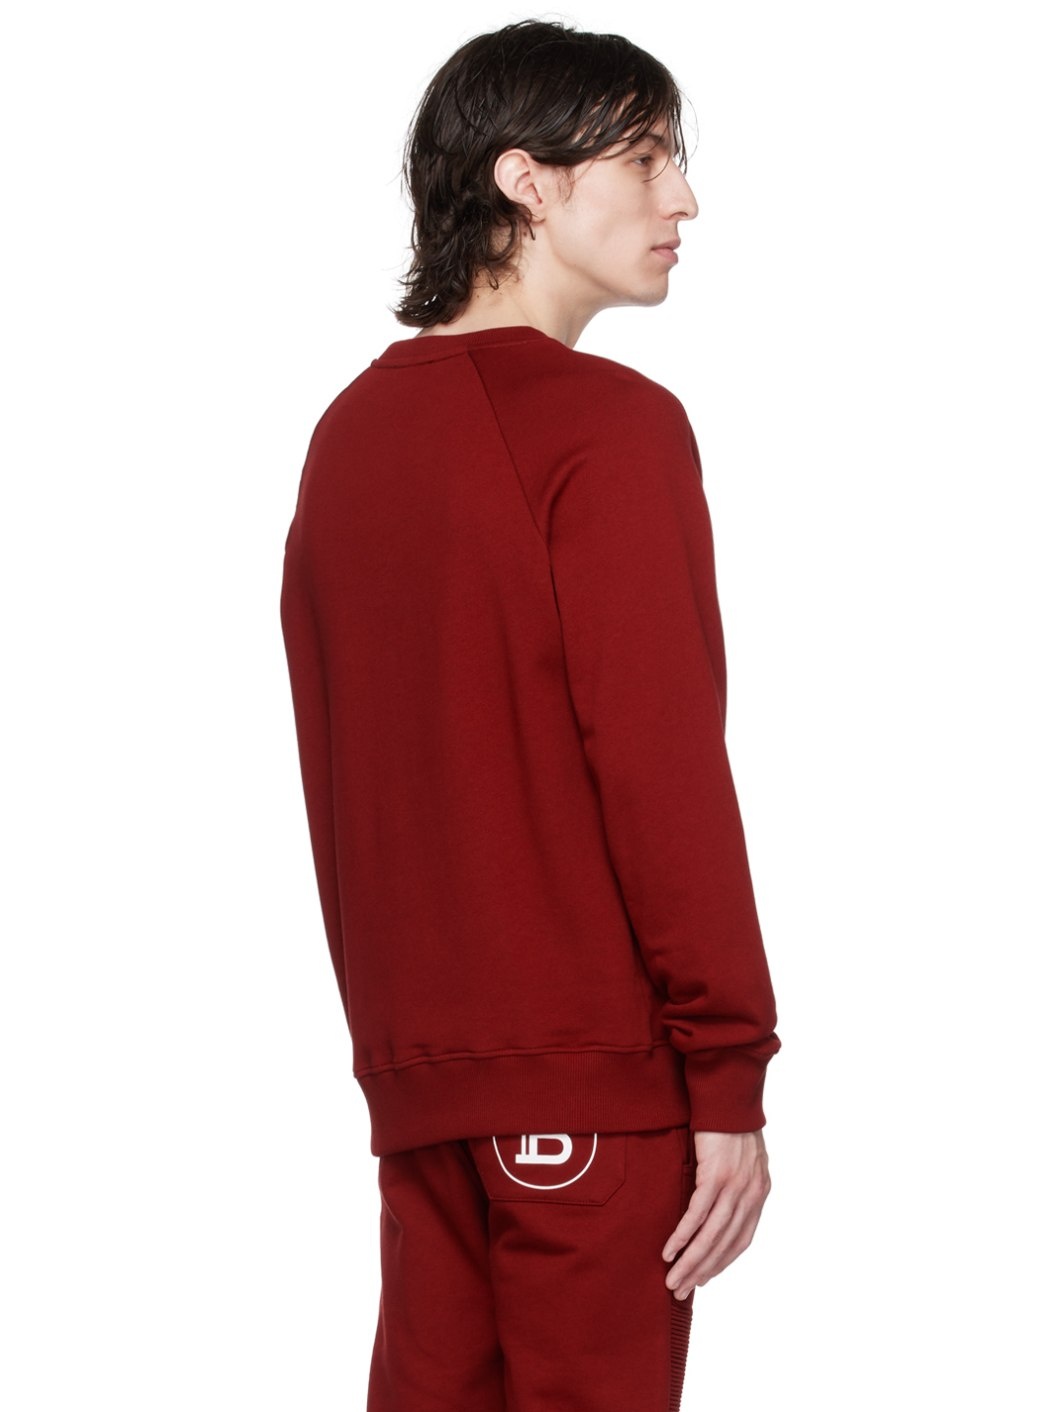 Red Printed Sweatshirt - 3